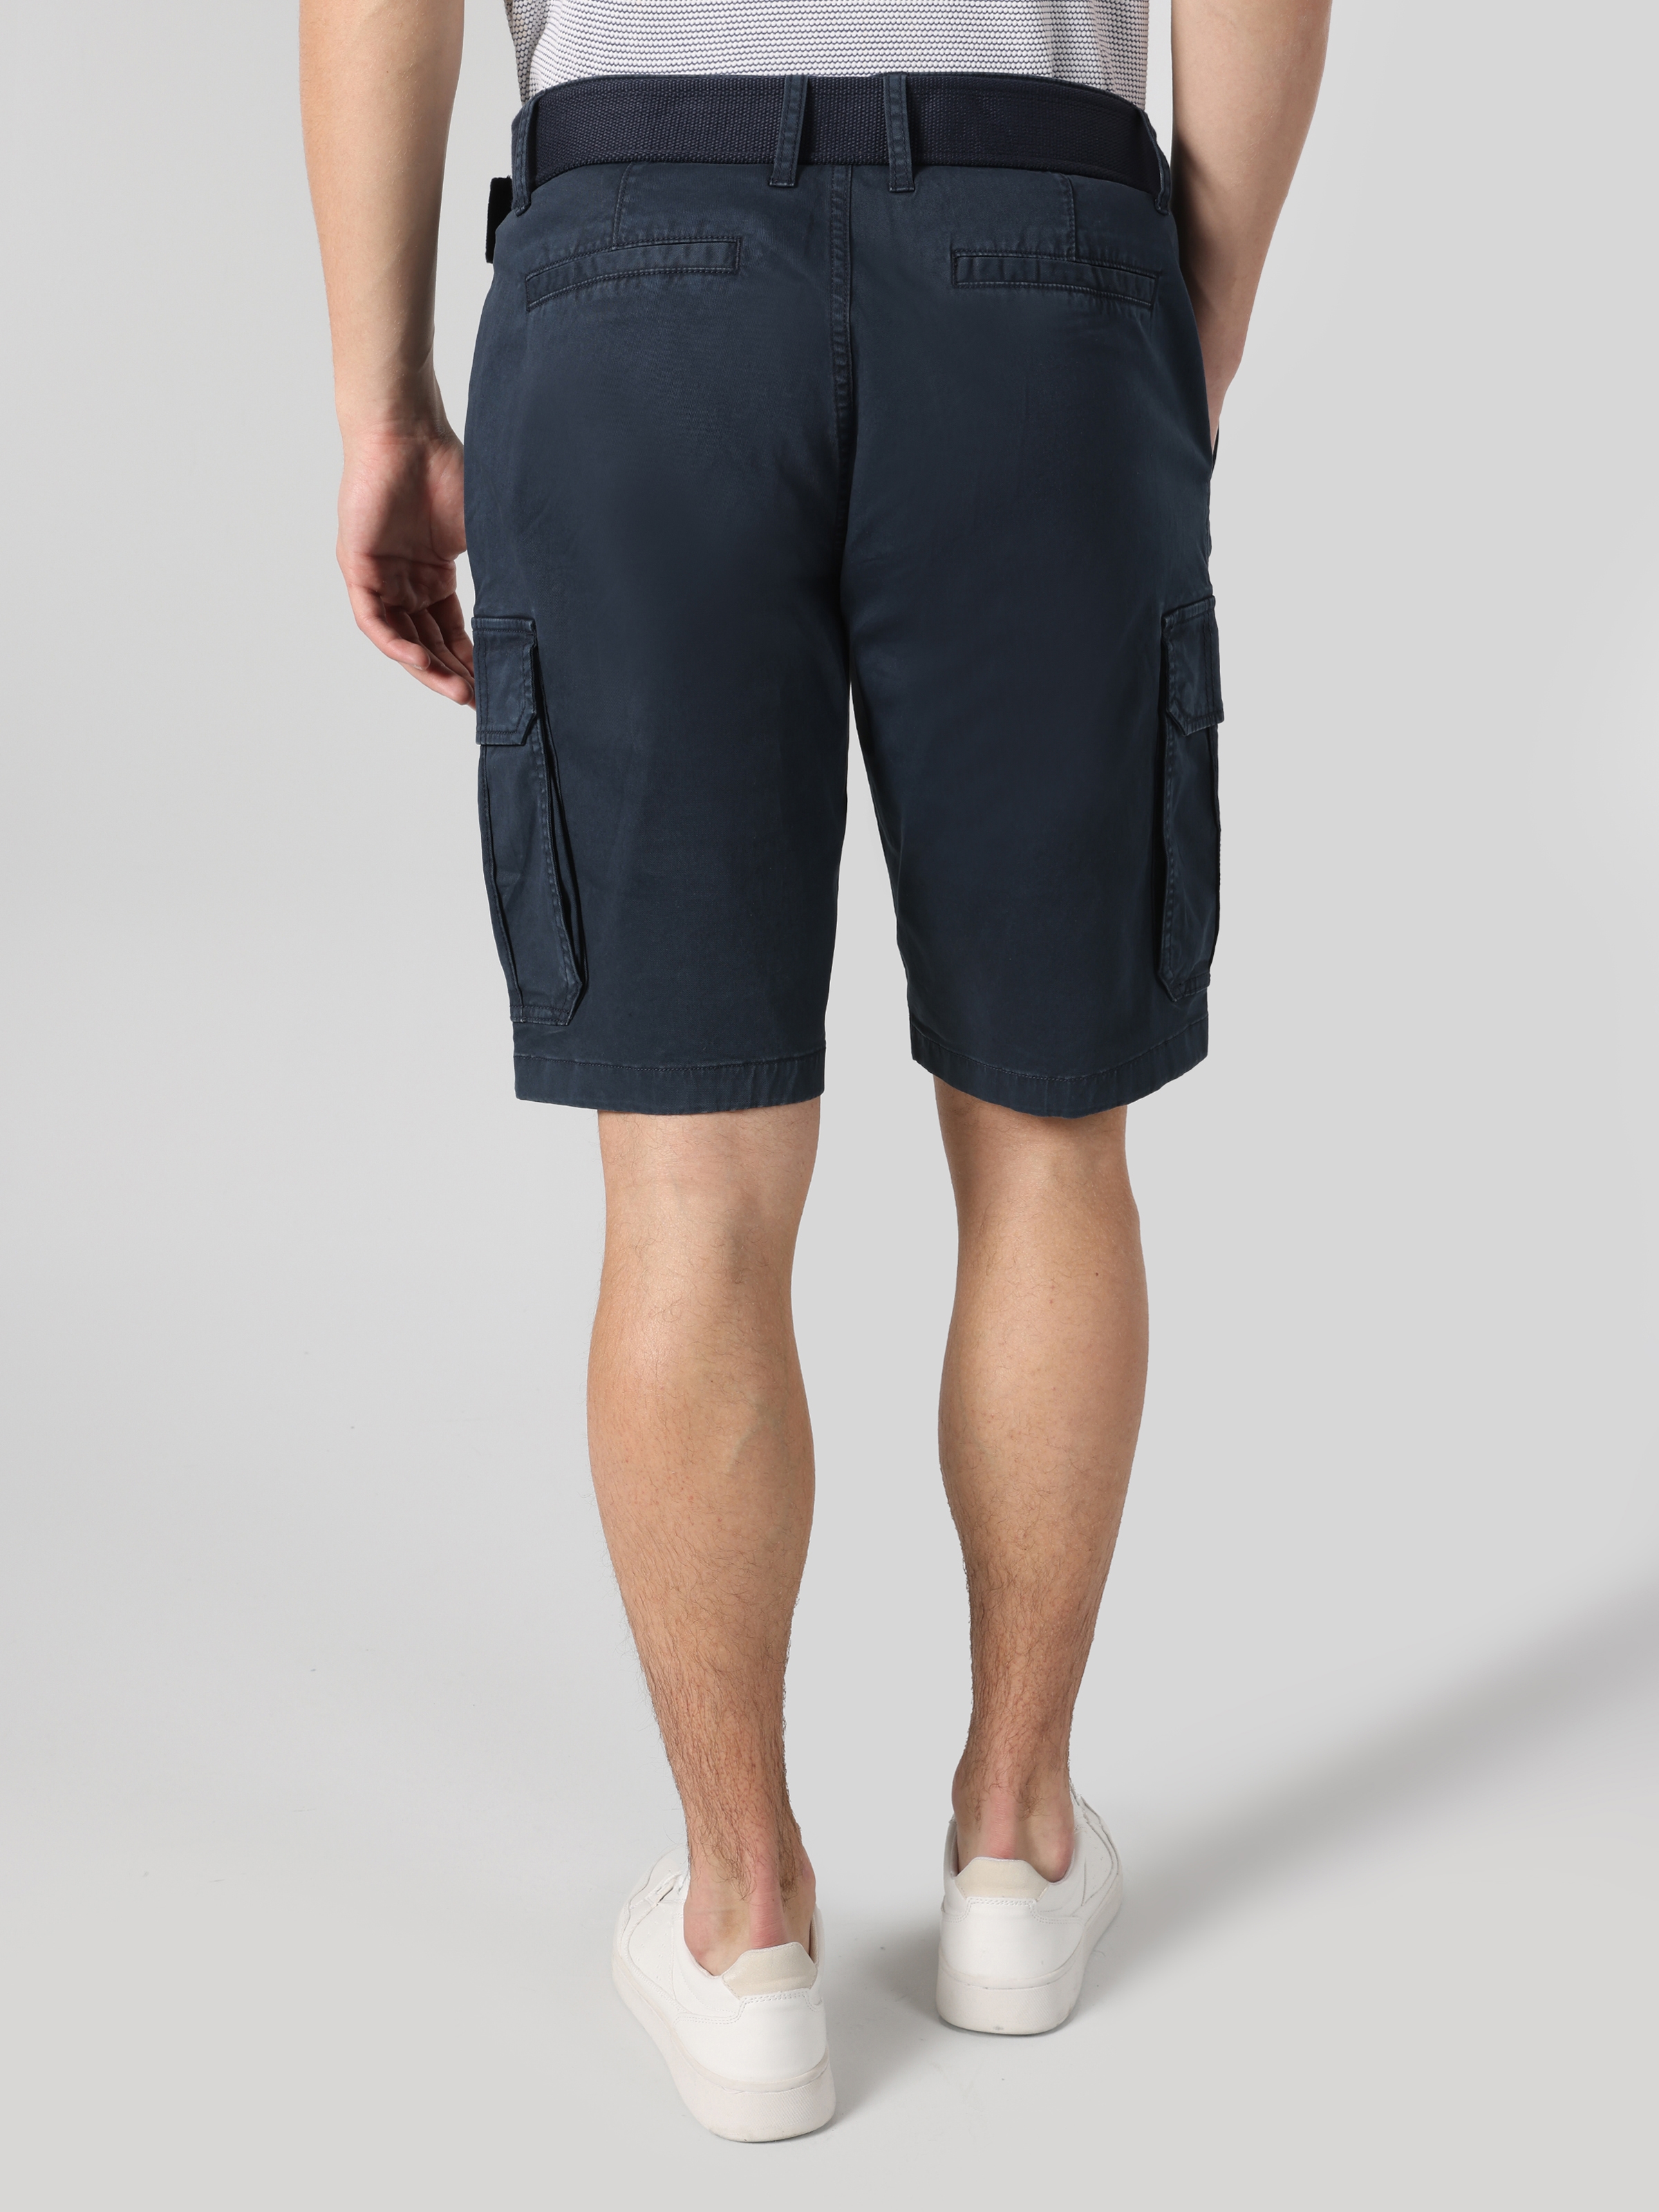 Afficher les détails de Short Homme Bleu Marine Coupe Regular Taille Moyenne